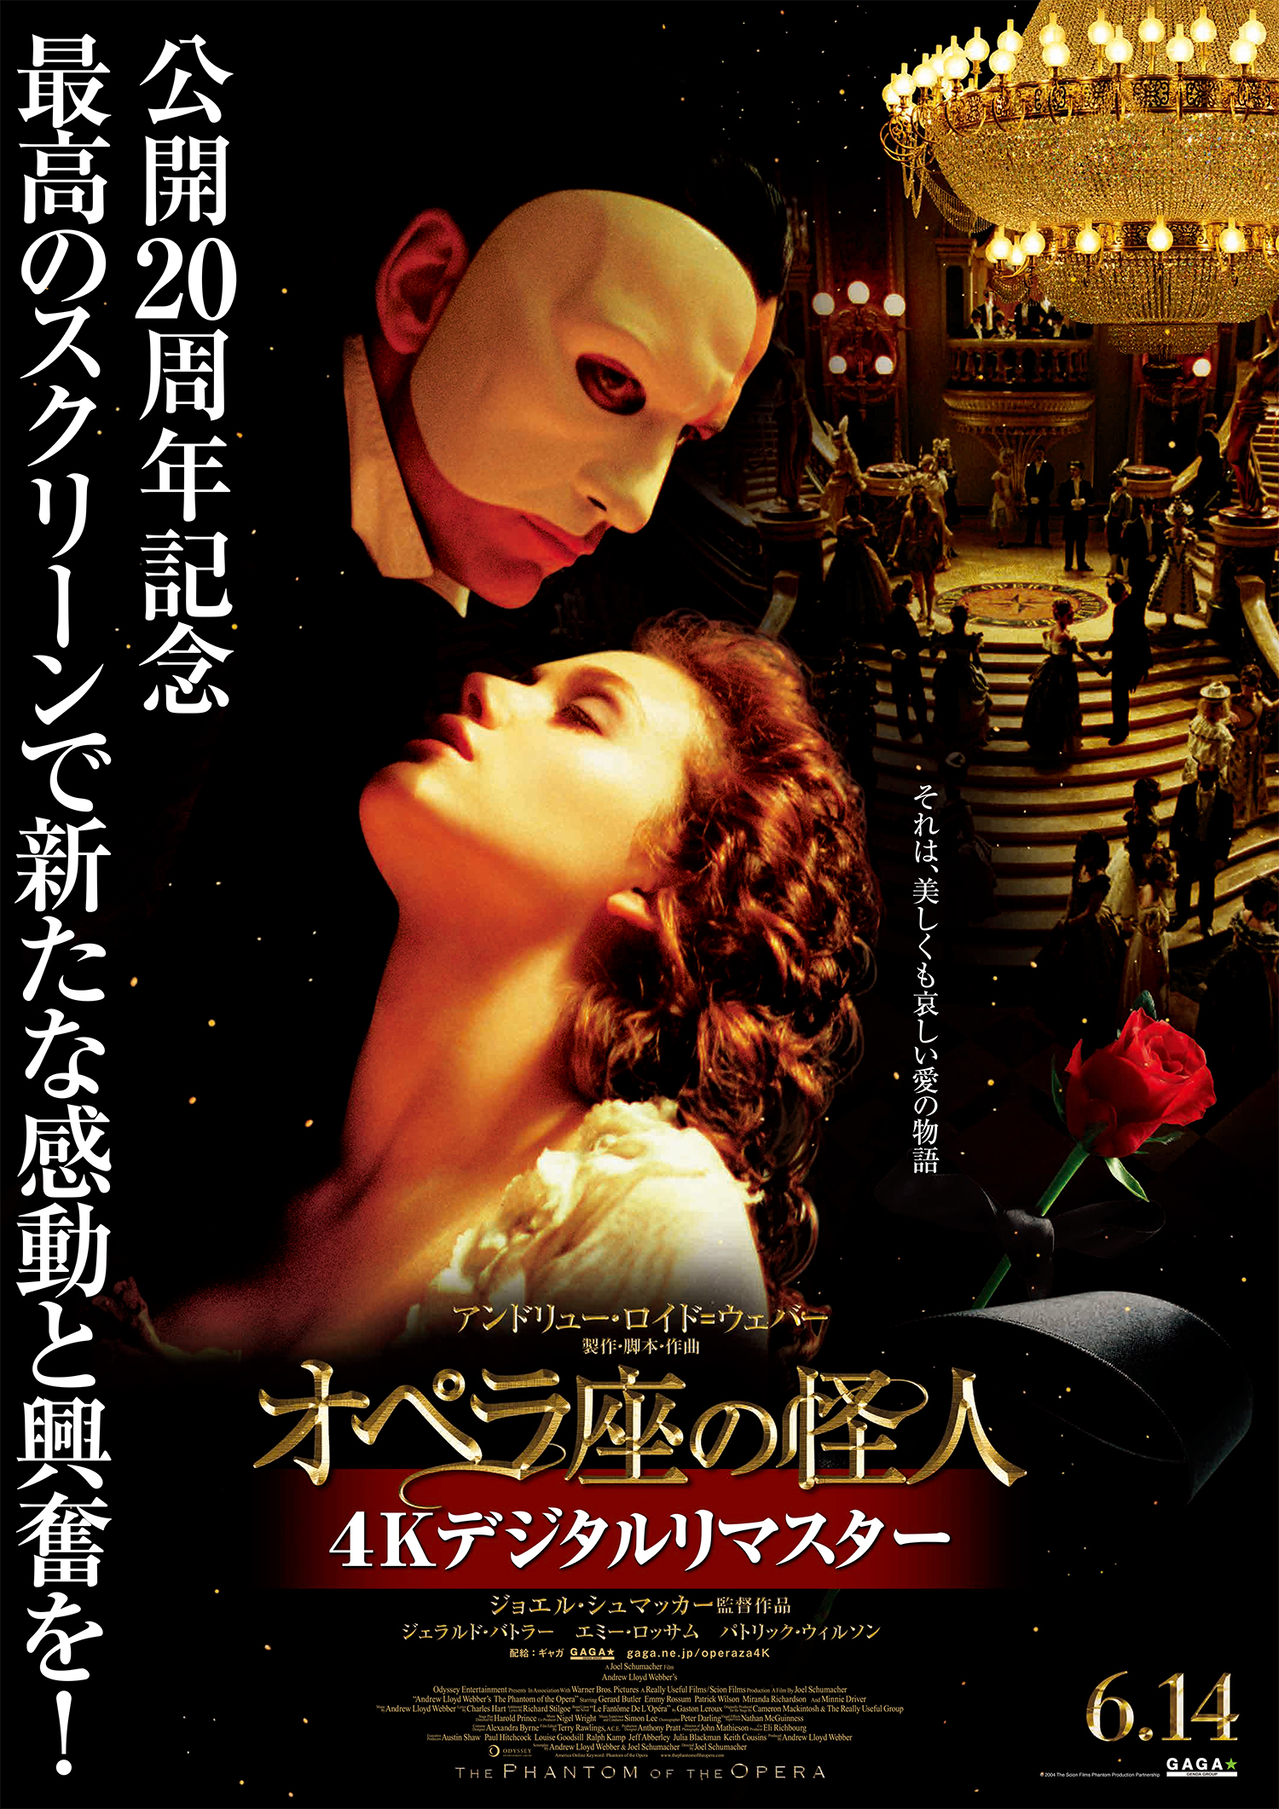 オペラ座の怪人」4Kデジタルリマスター版、6月14日公開 豪華絢爛な19 